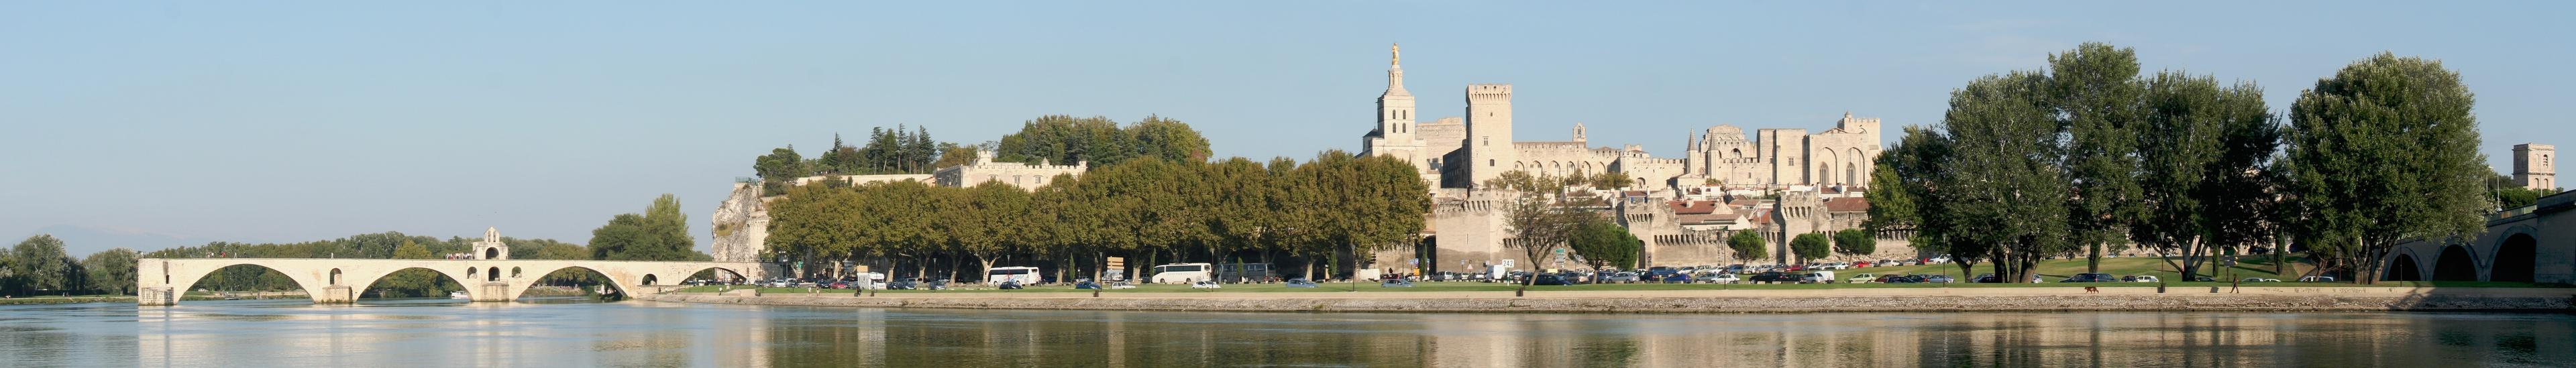 Banner image for Avignon on GigsGuide